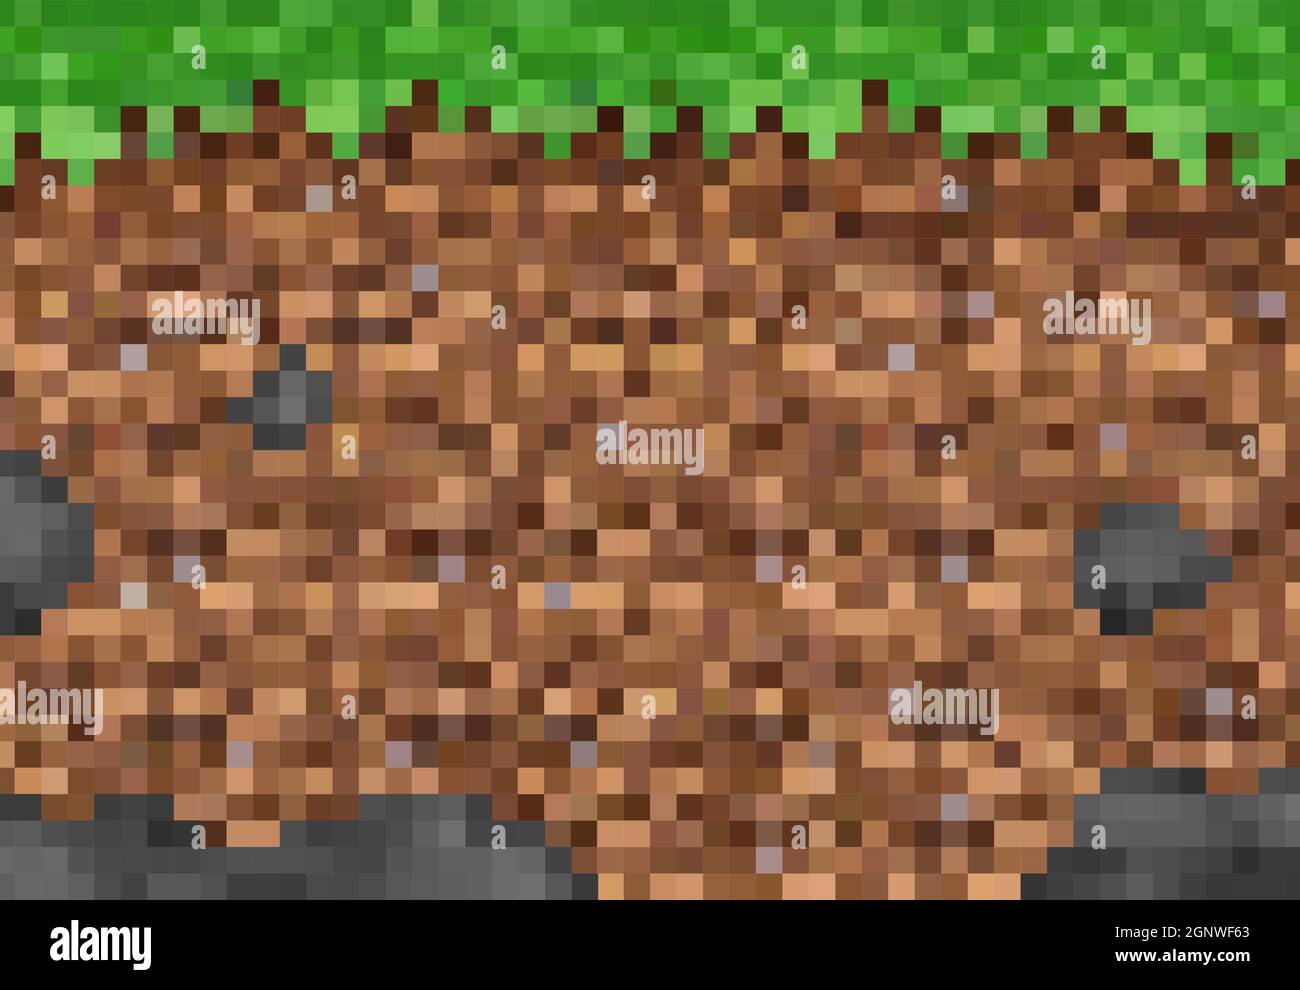 Kubikpixel Gras und Bodenblöcke, Vektor-Pixel-Spiel Hintergrundmuster. 8-Bit-Pixel-Kunstlandschaft  von mir, Untergrund und grünes Gras Textur, 8-Bit-Computer-Spiel-Level-Schnittstelle  Stock-Vektorgrafik - Alamy